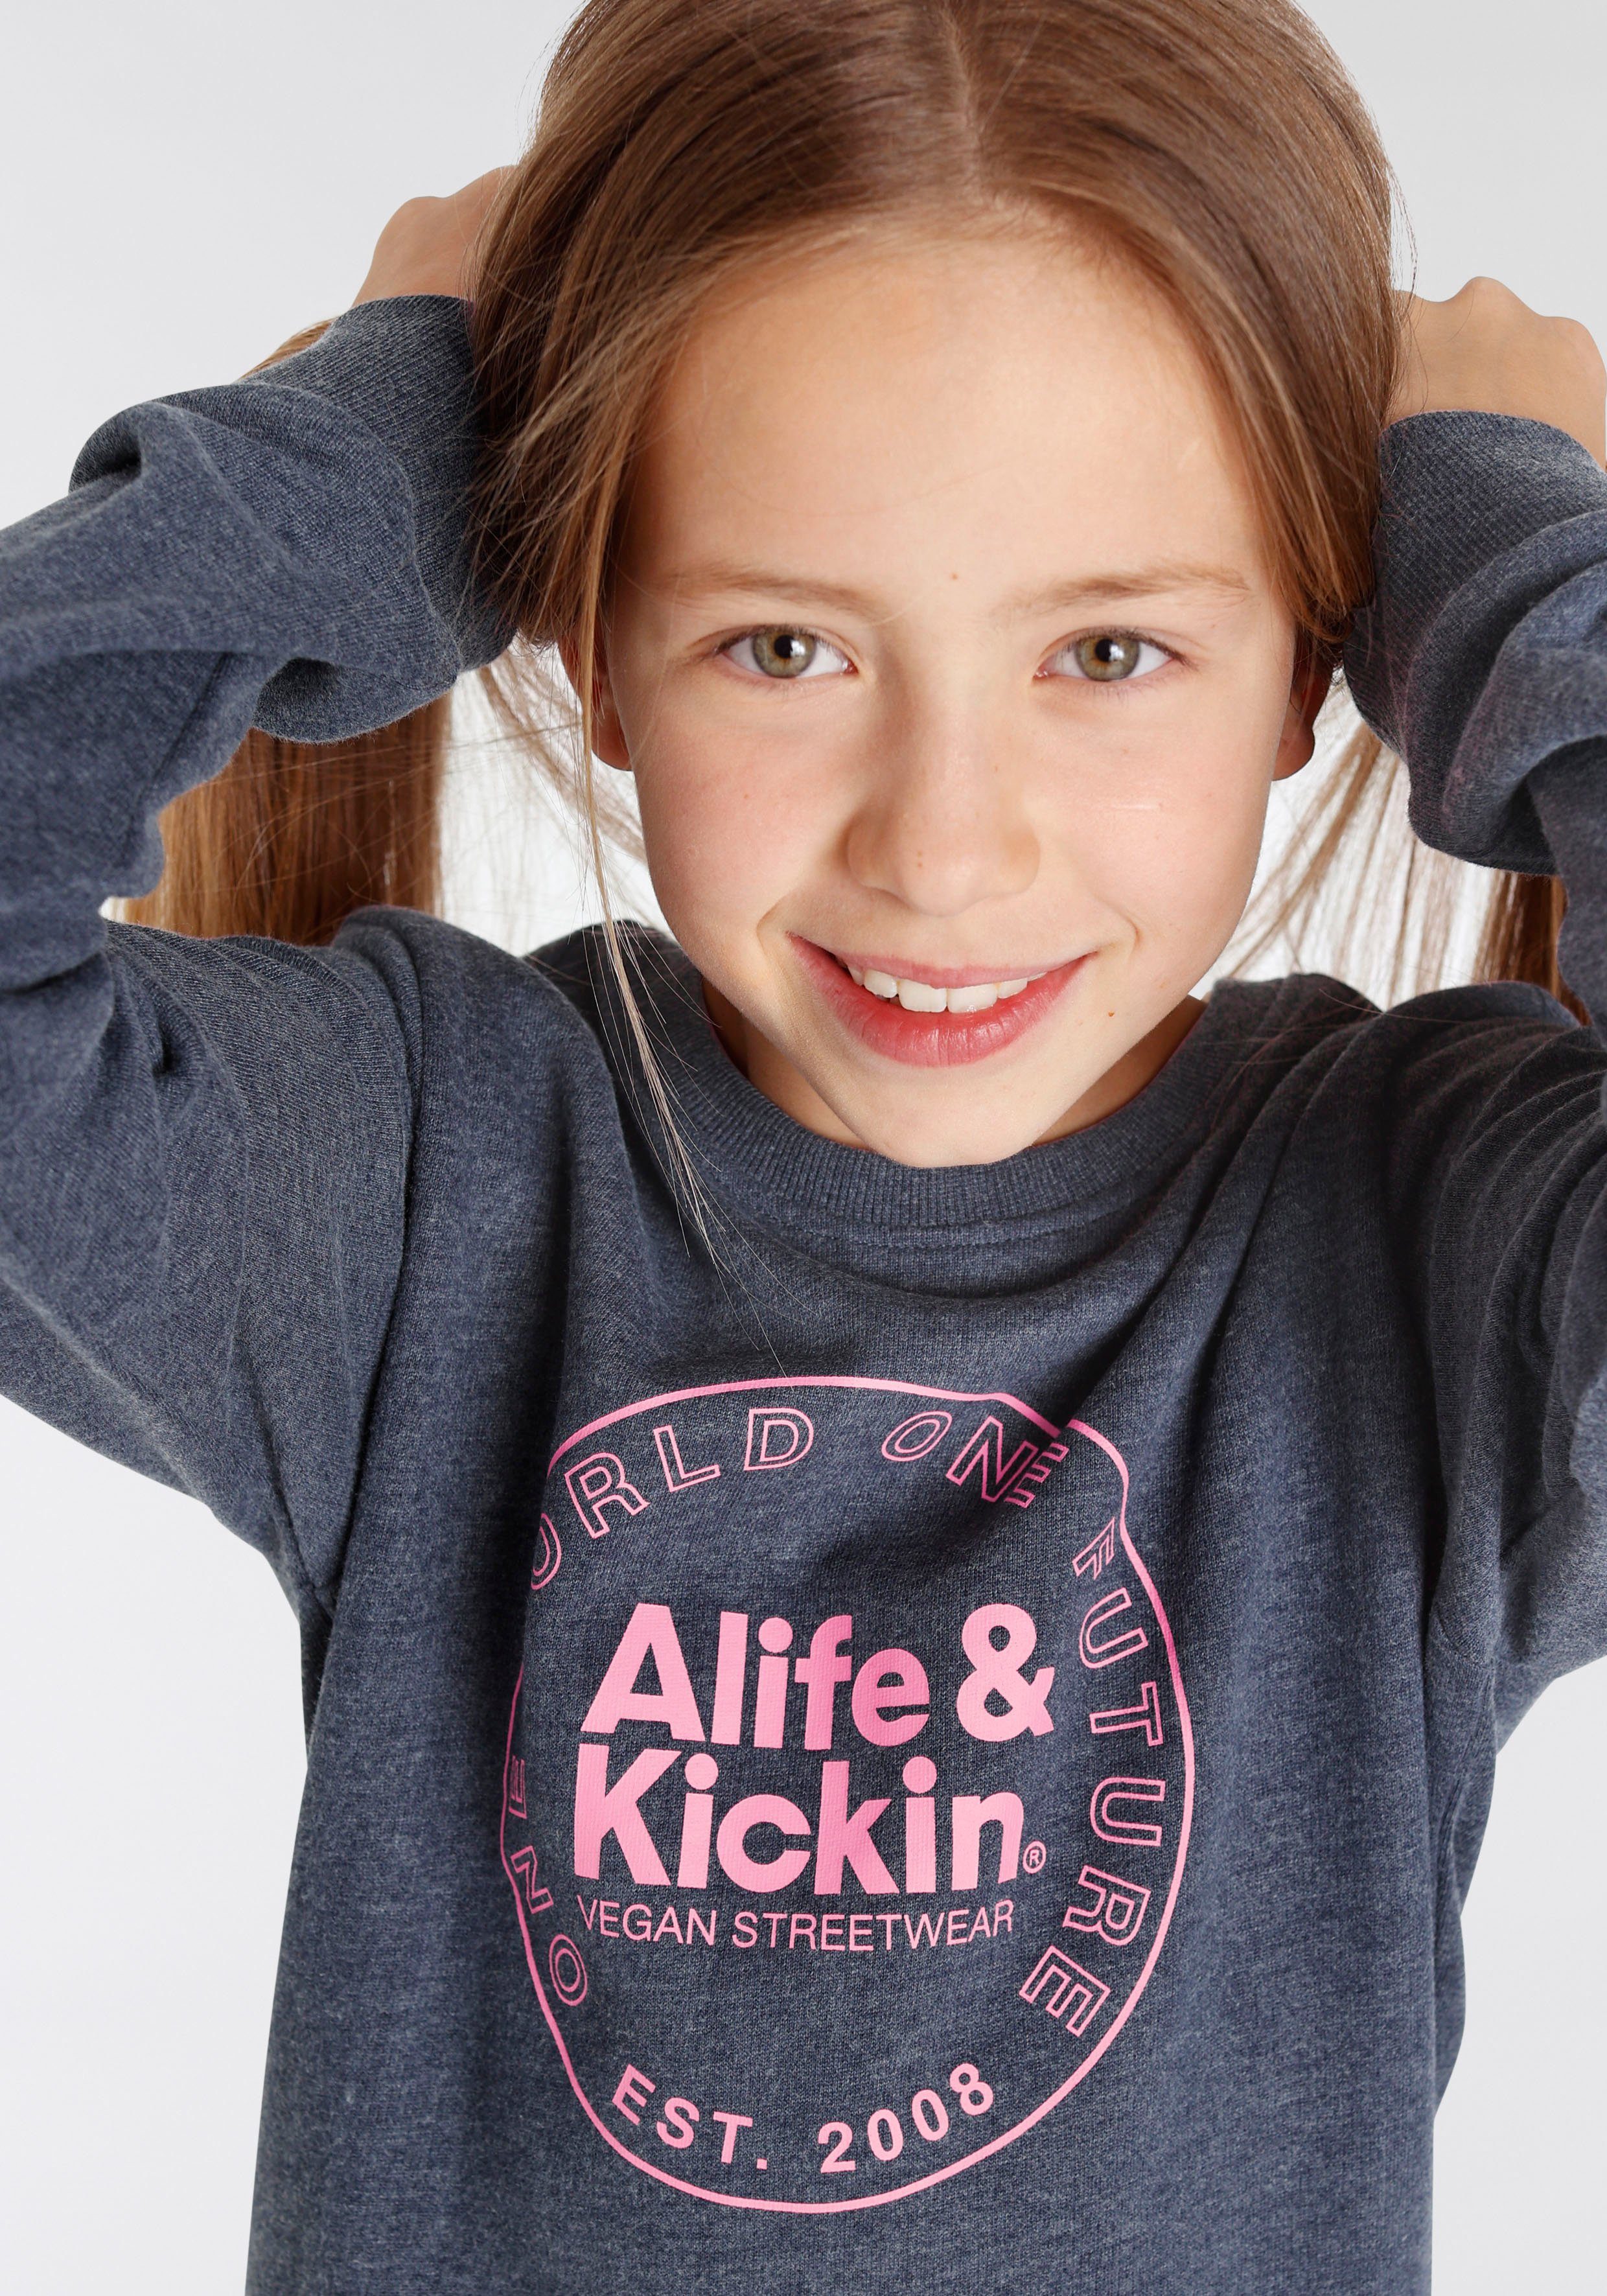 Alife & MARKE! Alife NEUE & für Logo Druck mit Kids. Kickin Kickin Sweatshirt